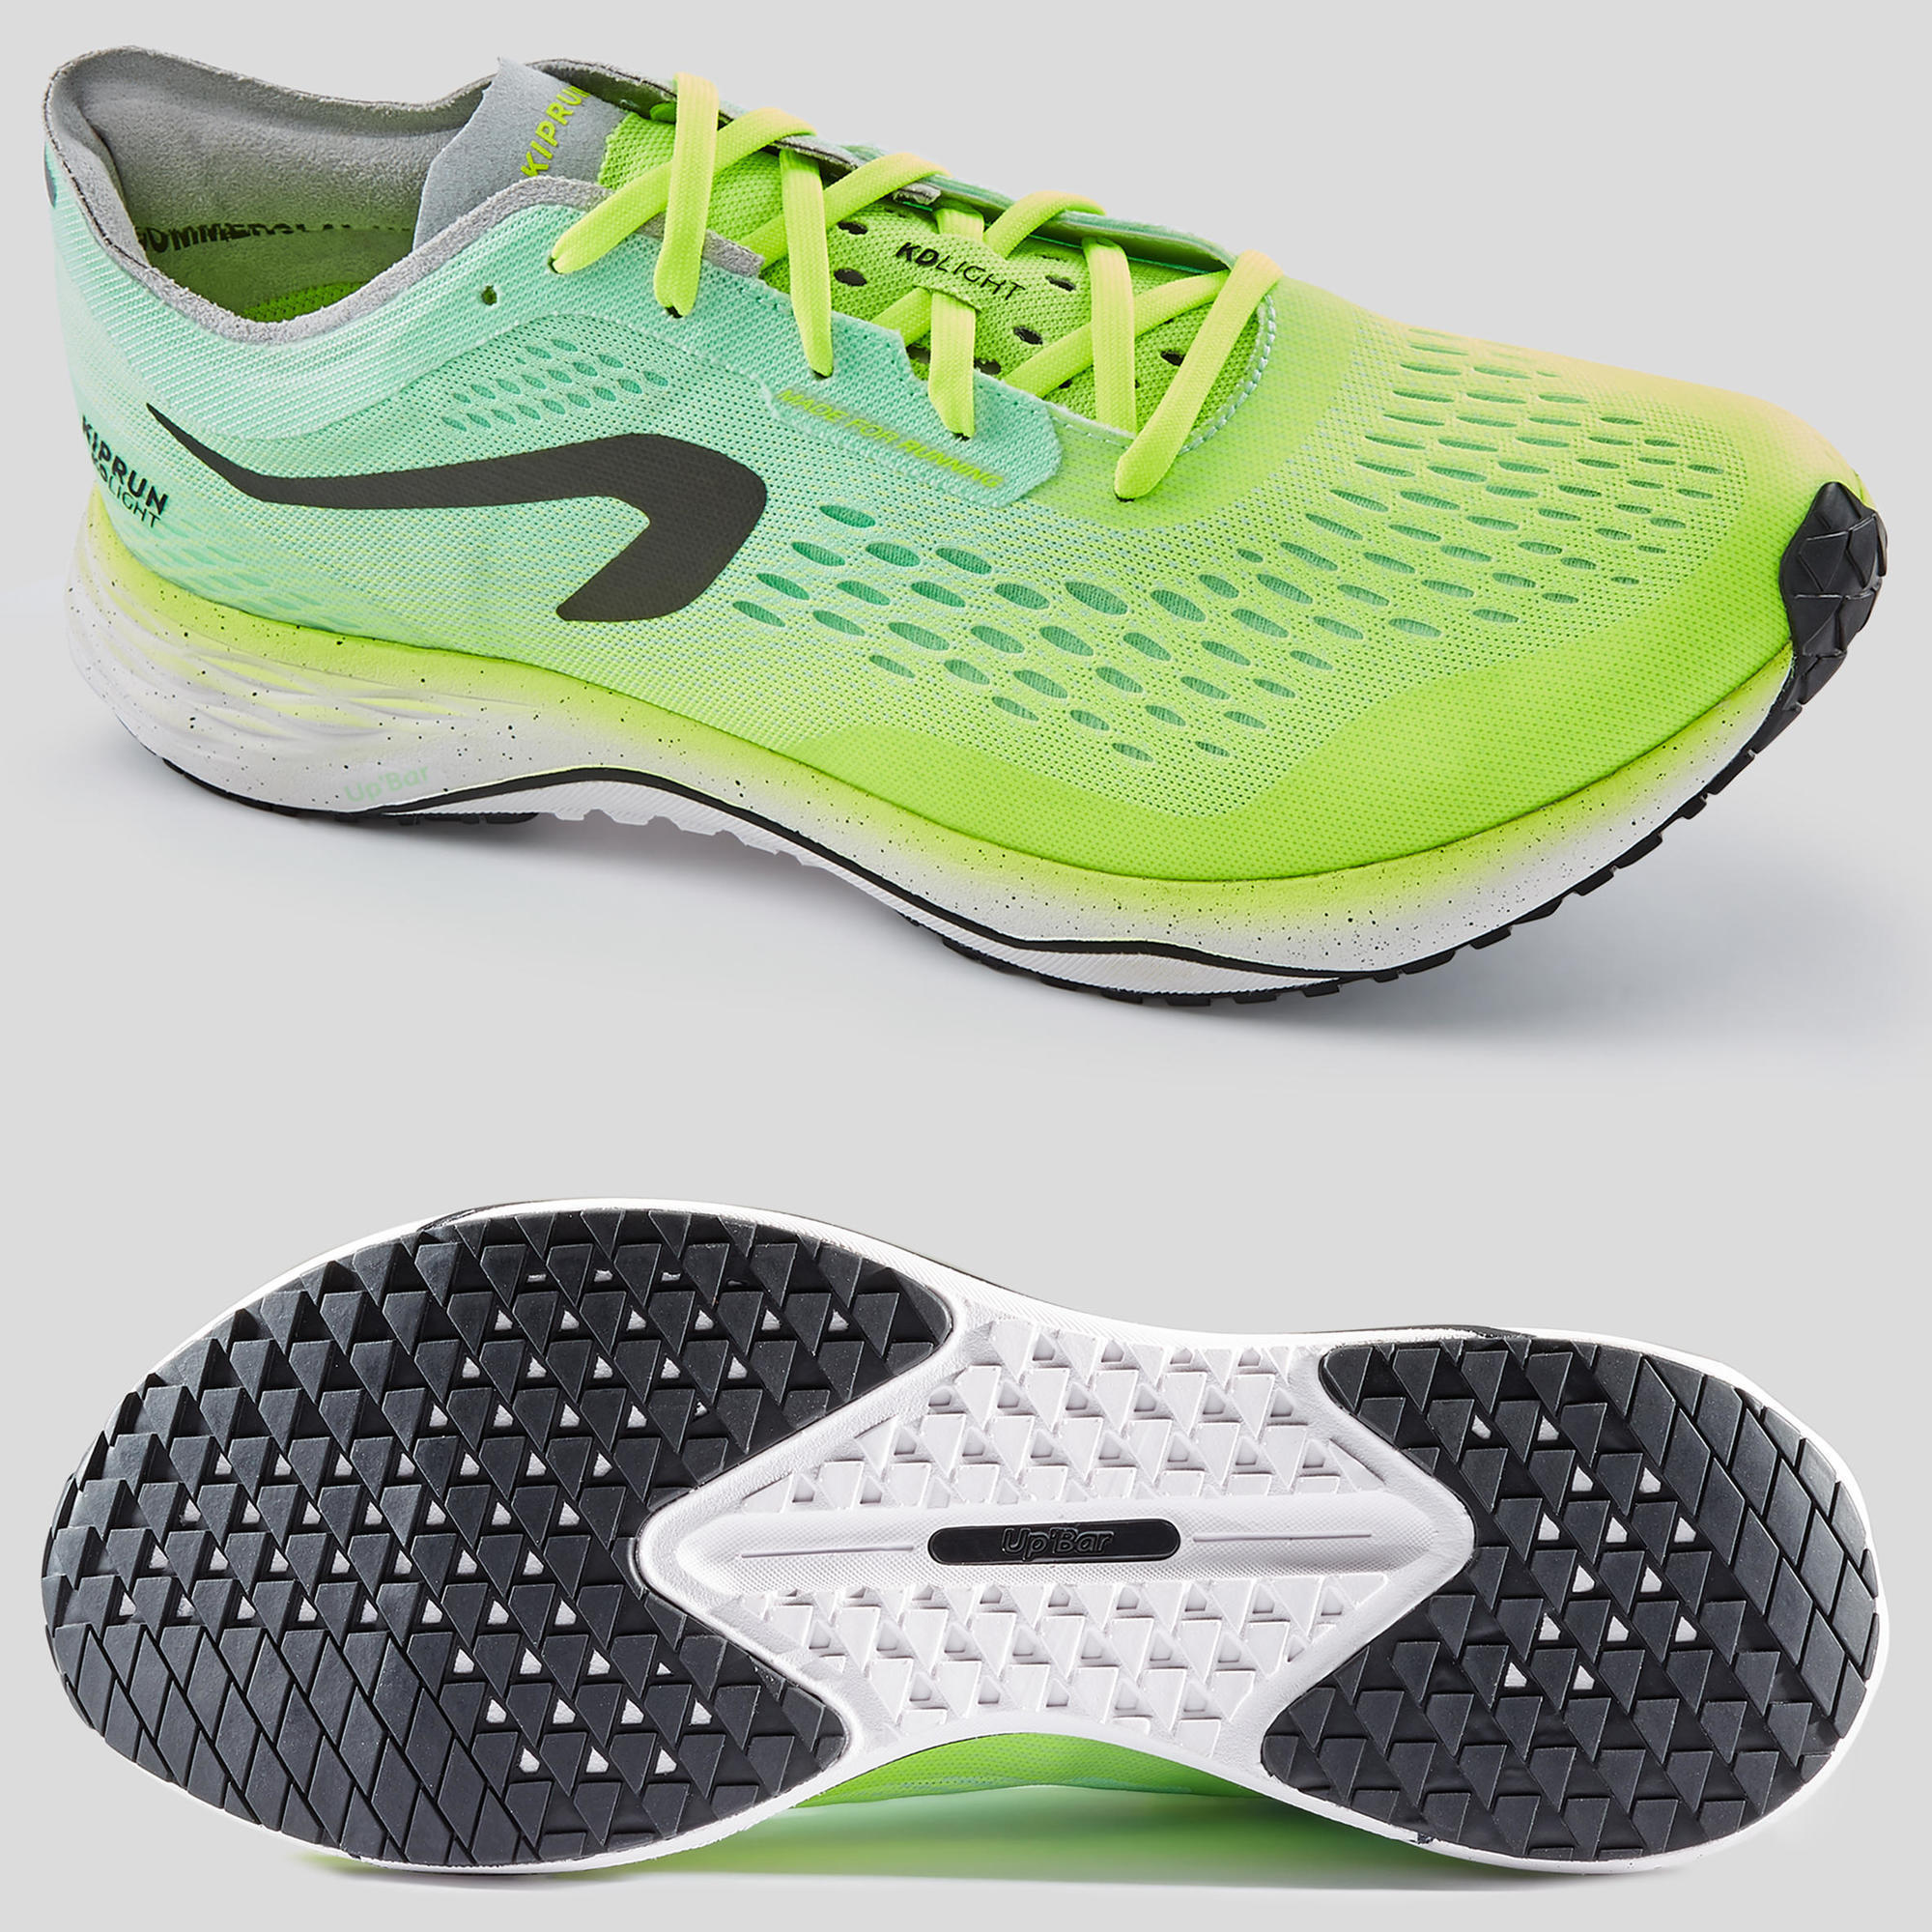 lightest men's running shoes